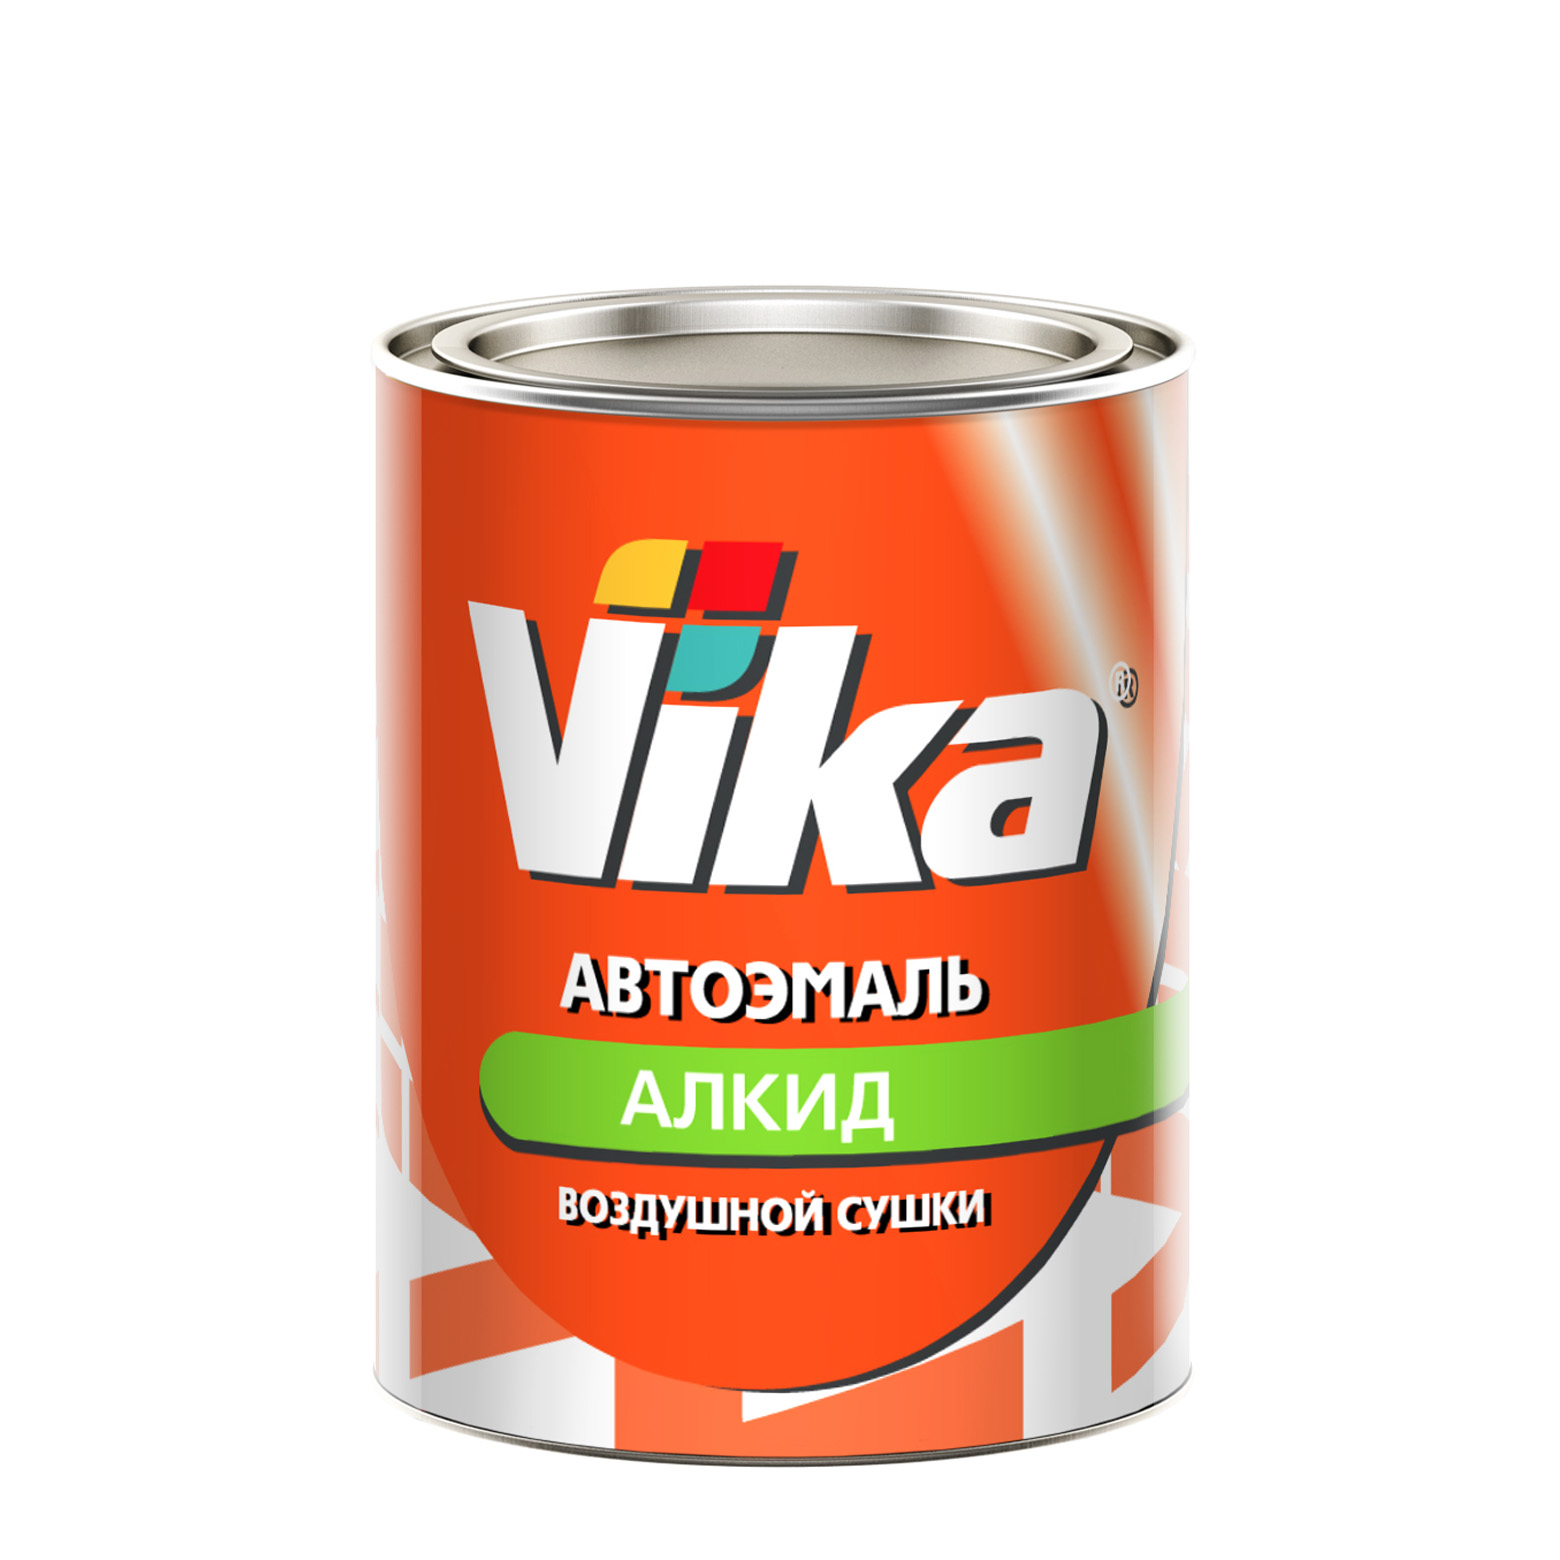 Фото 1 - Автоэмаль Vika-60, цвет 303 Защитная алкидная глянцевая естественной сушки - 0,8 кг.